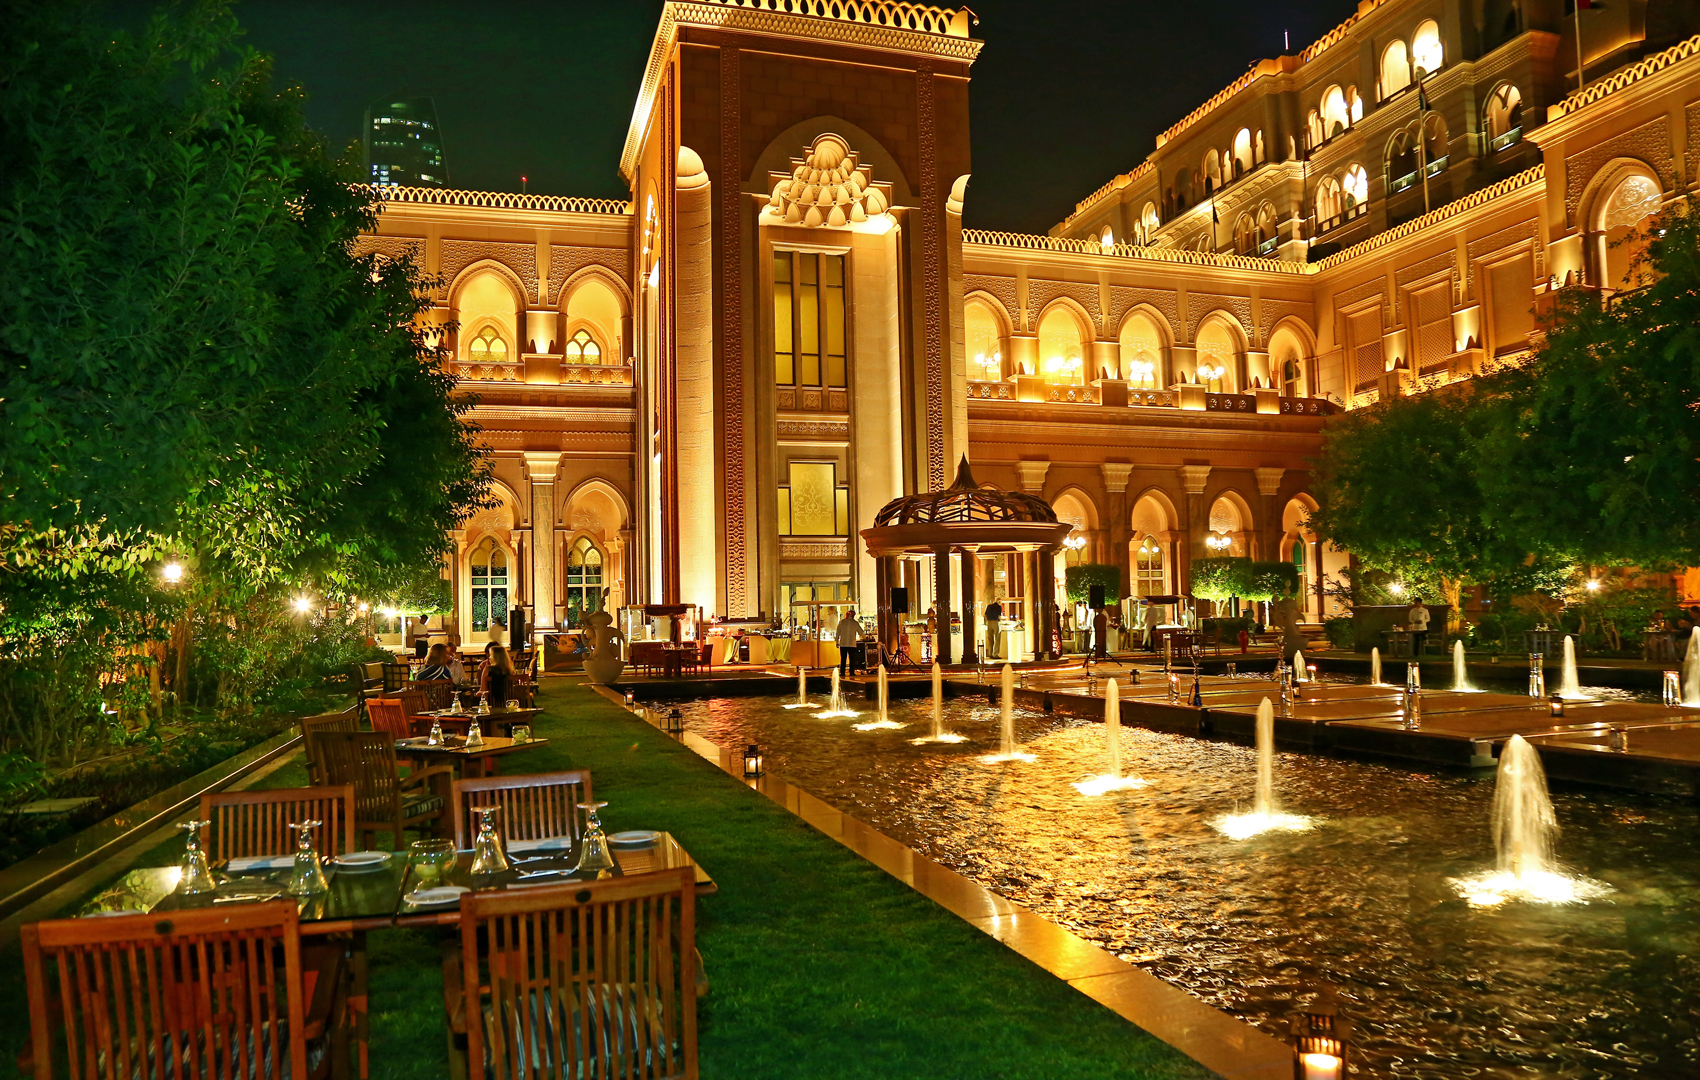 " ليالي إماراتية " كل خميس بفندق قصر الإمارات | أسواق ستي